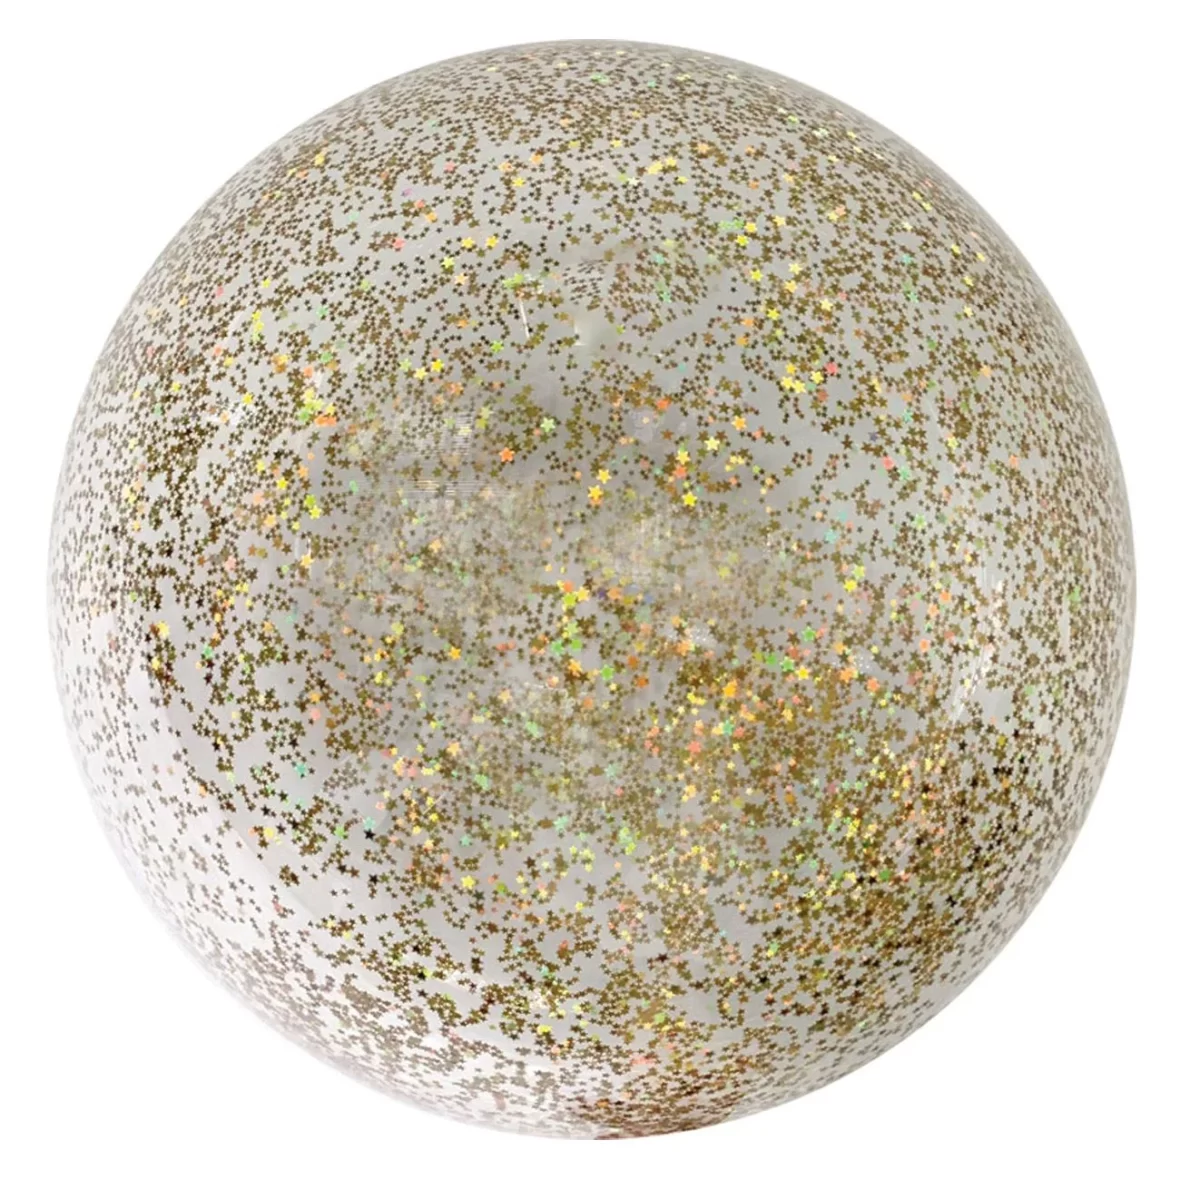 Balon bobo cu confetii stelute aurii, 45 cm